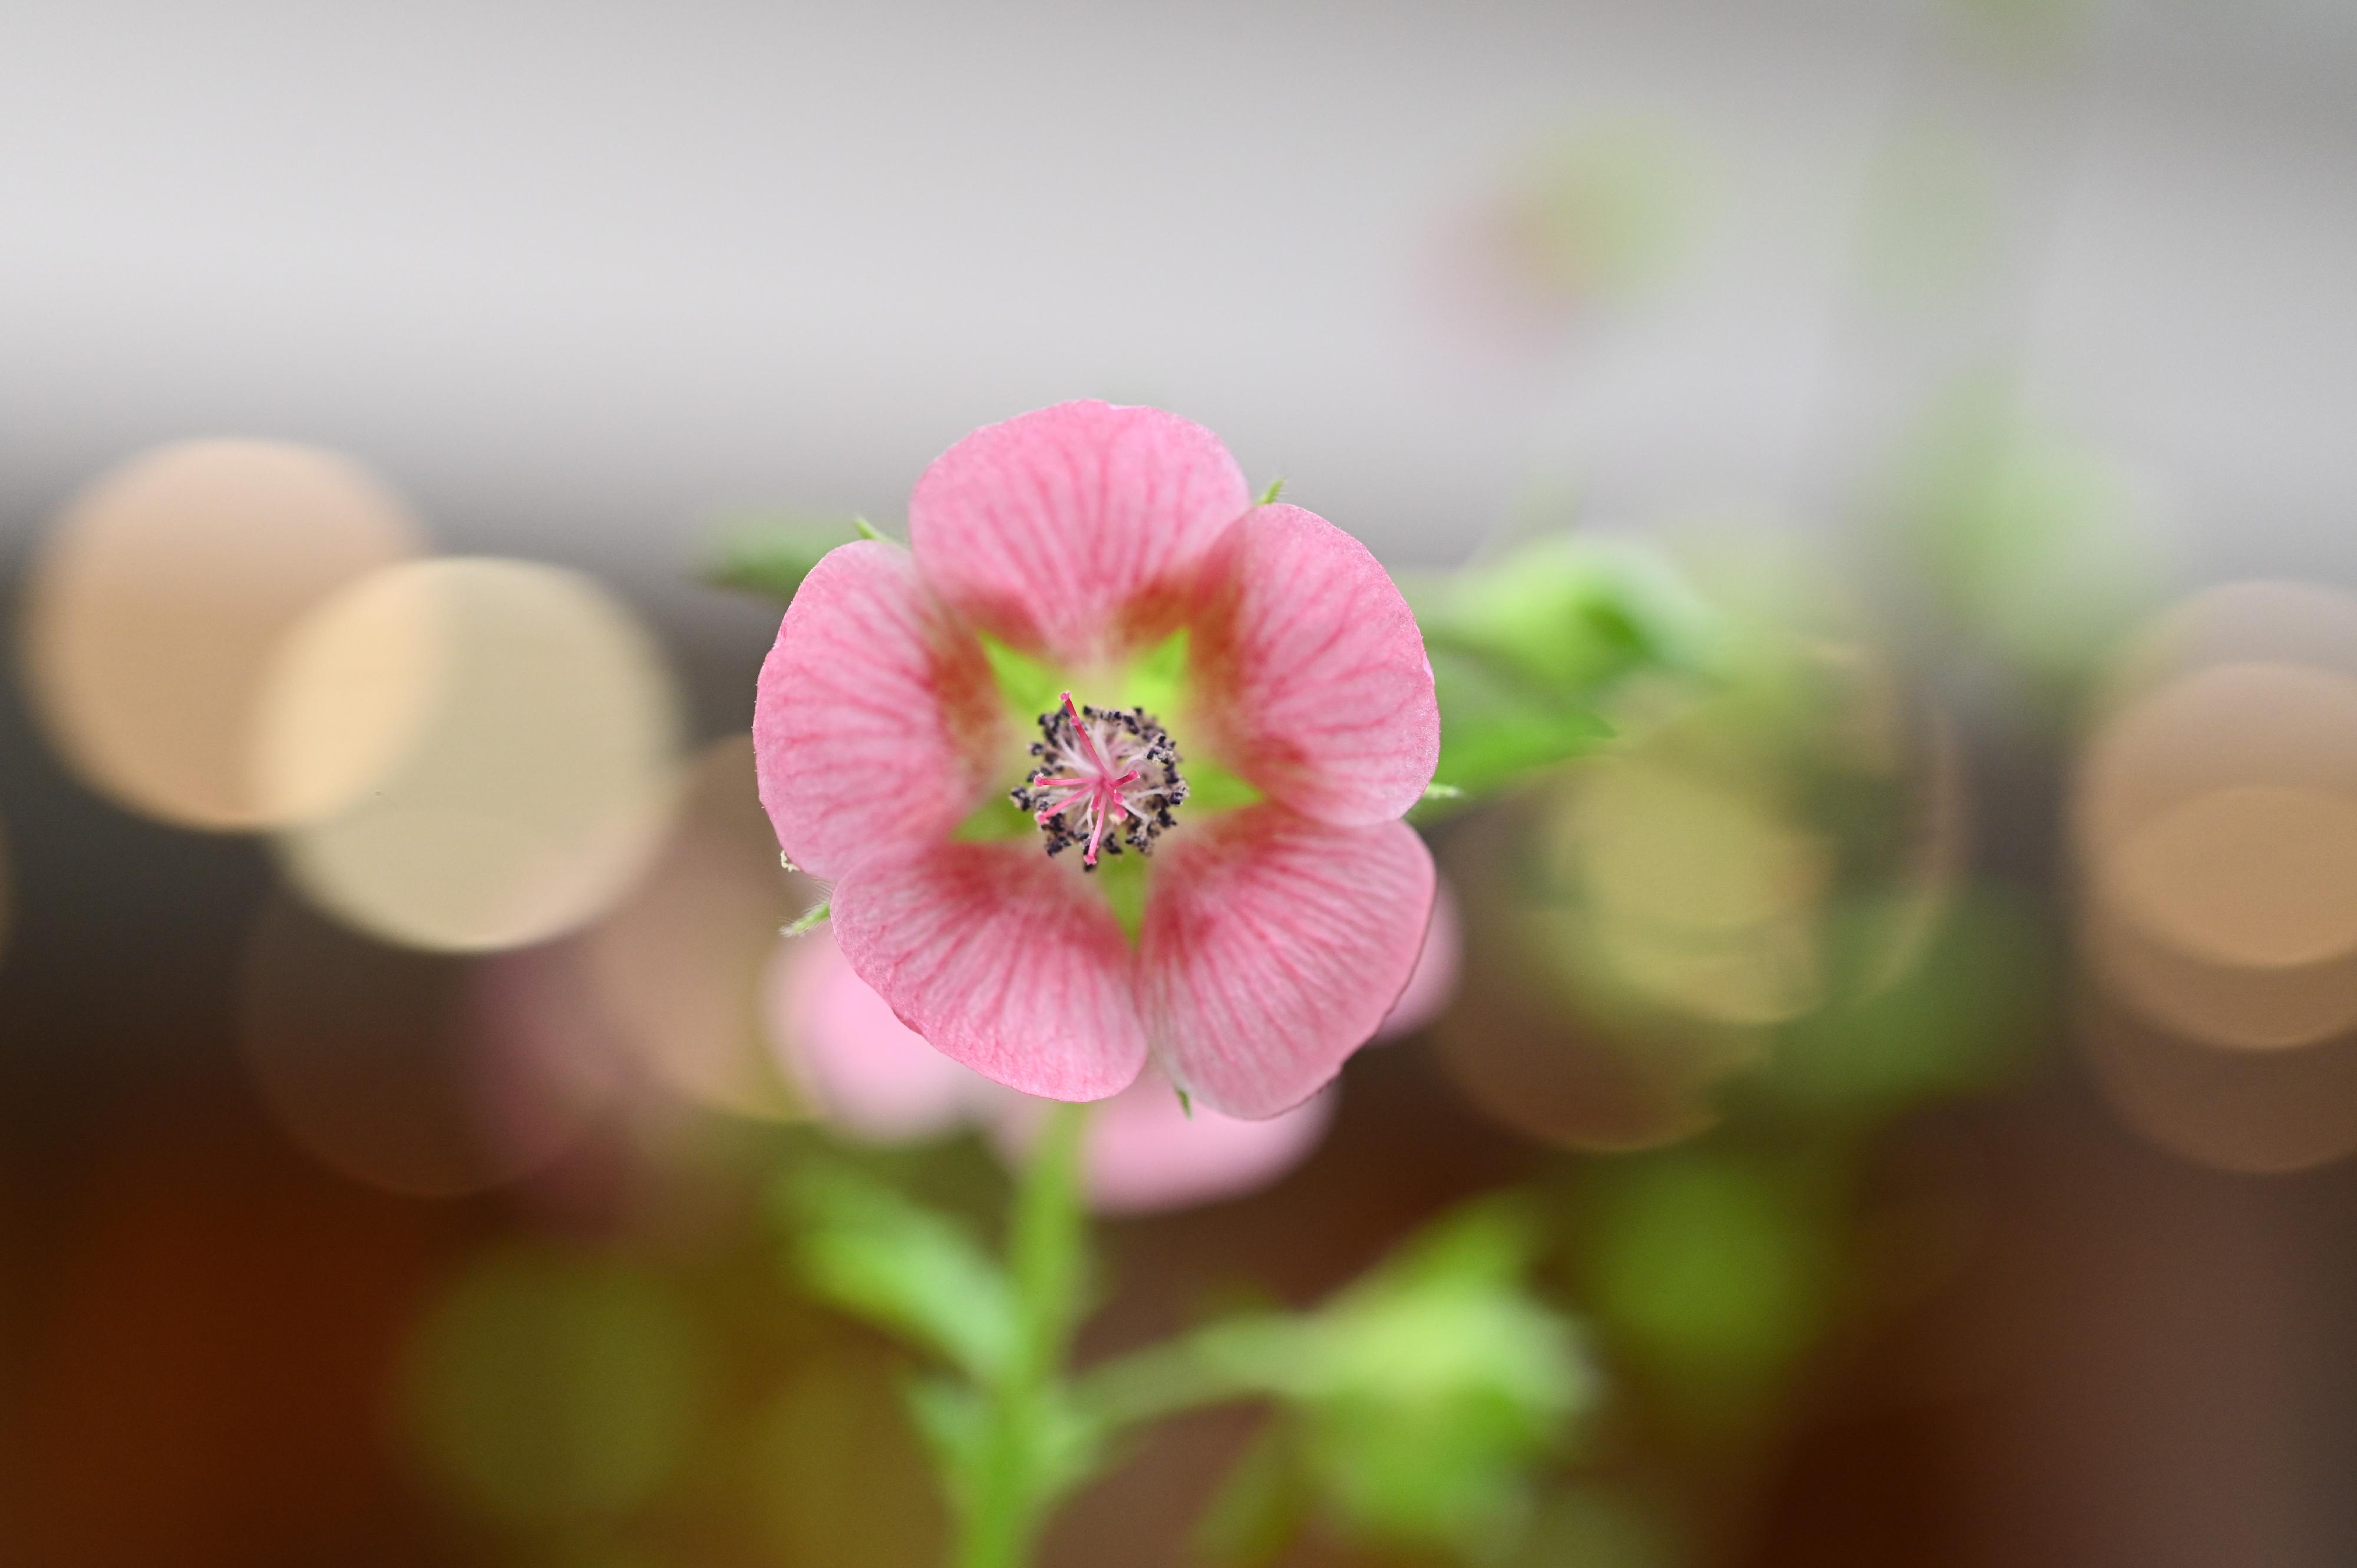 康乐及文化事务署辖下香港公园霍士杰温室四月二十二日起举办食用花与香草展览，展出500多株不同形态的春季食用花与香草。图示展览内展出的小木槿。